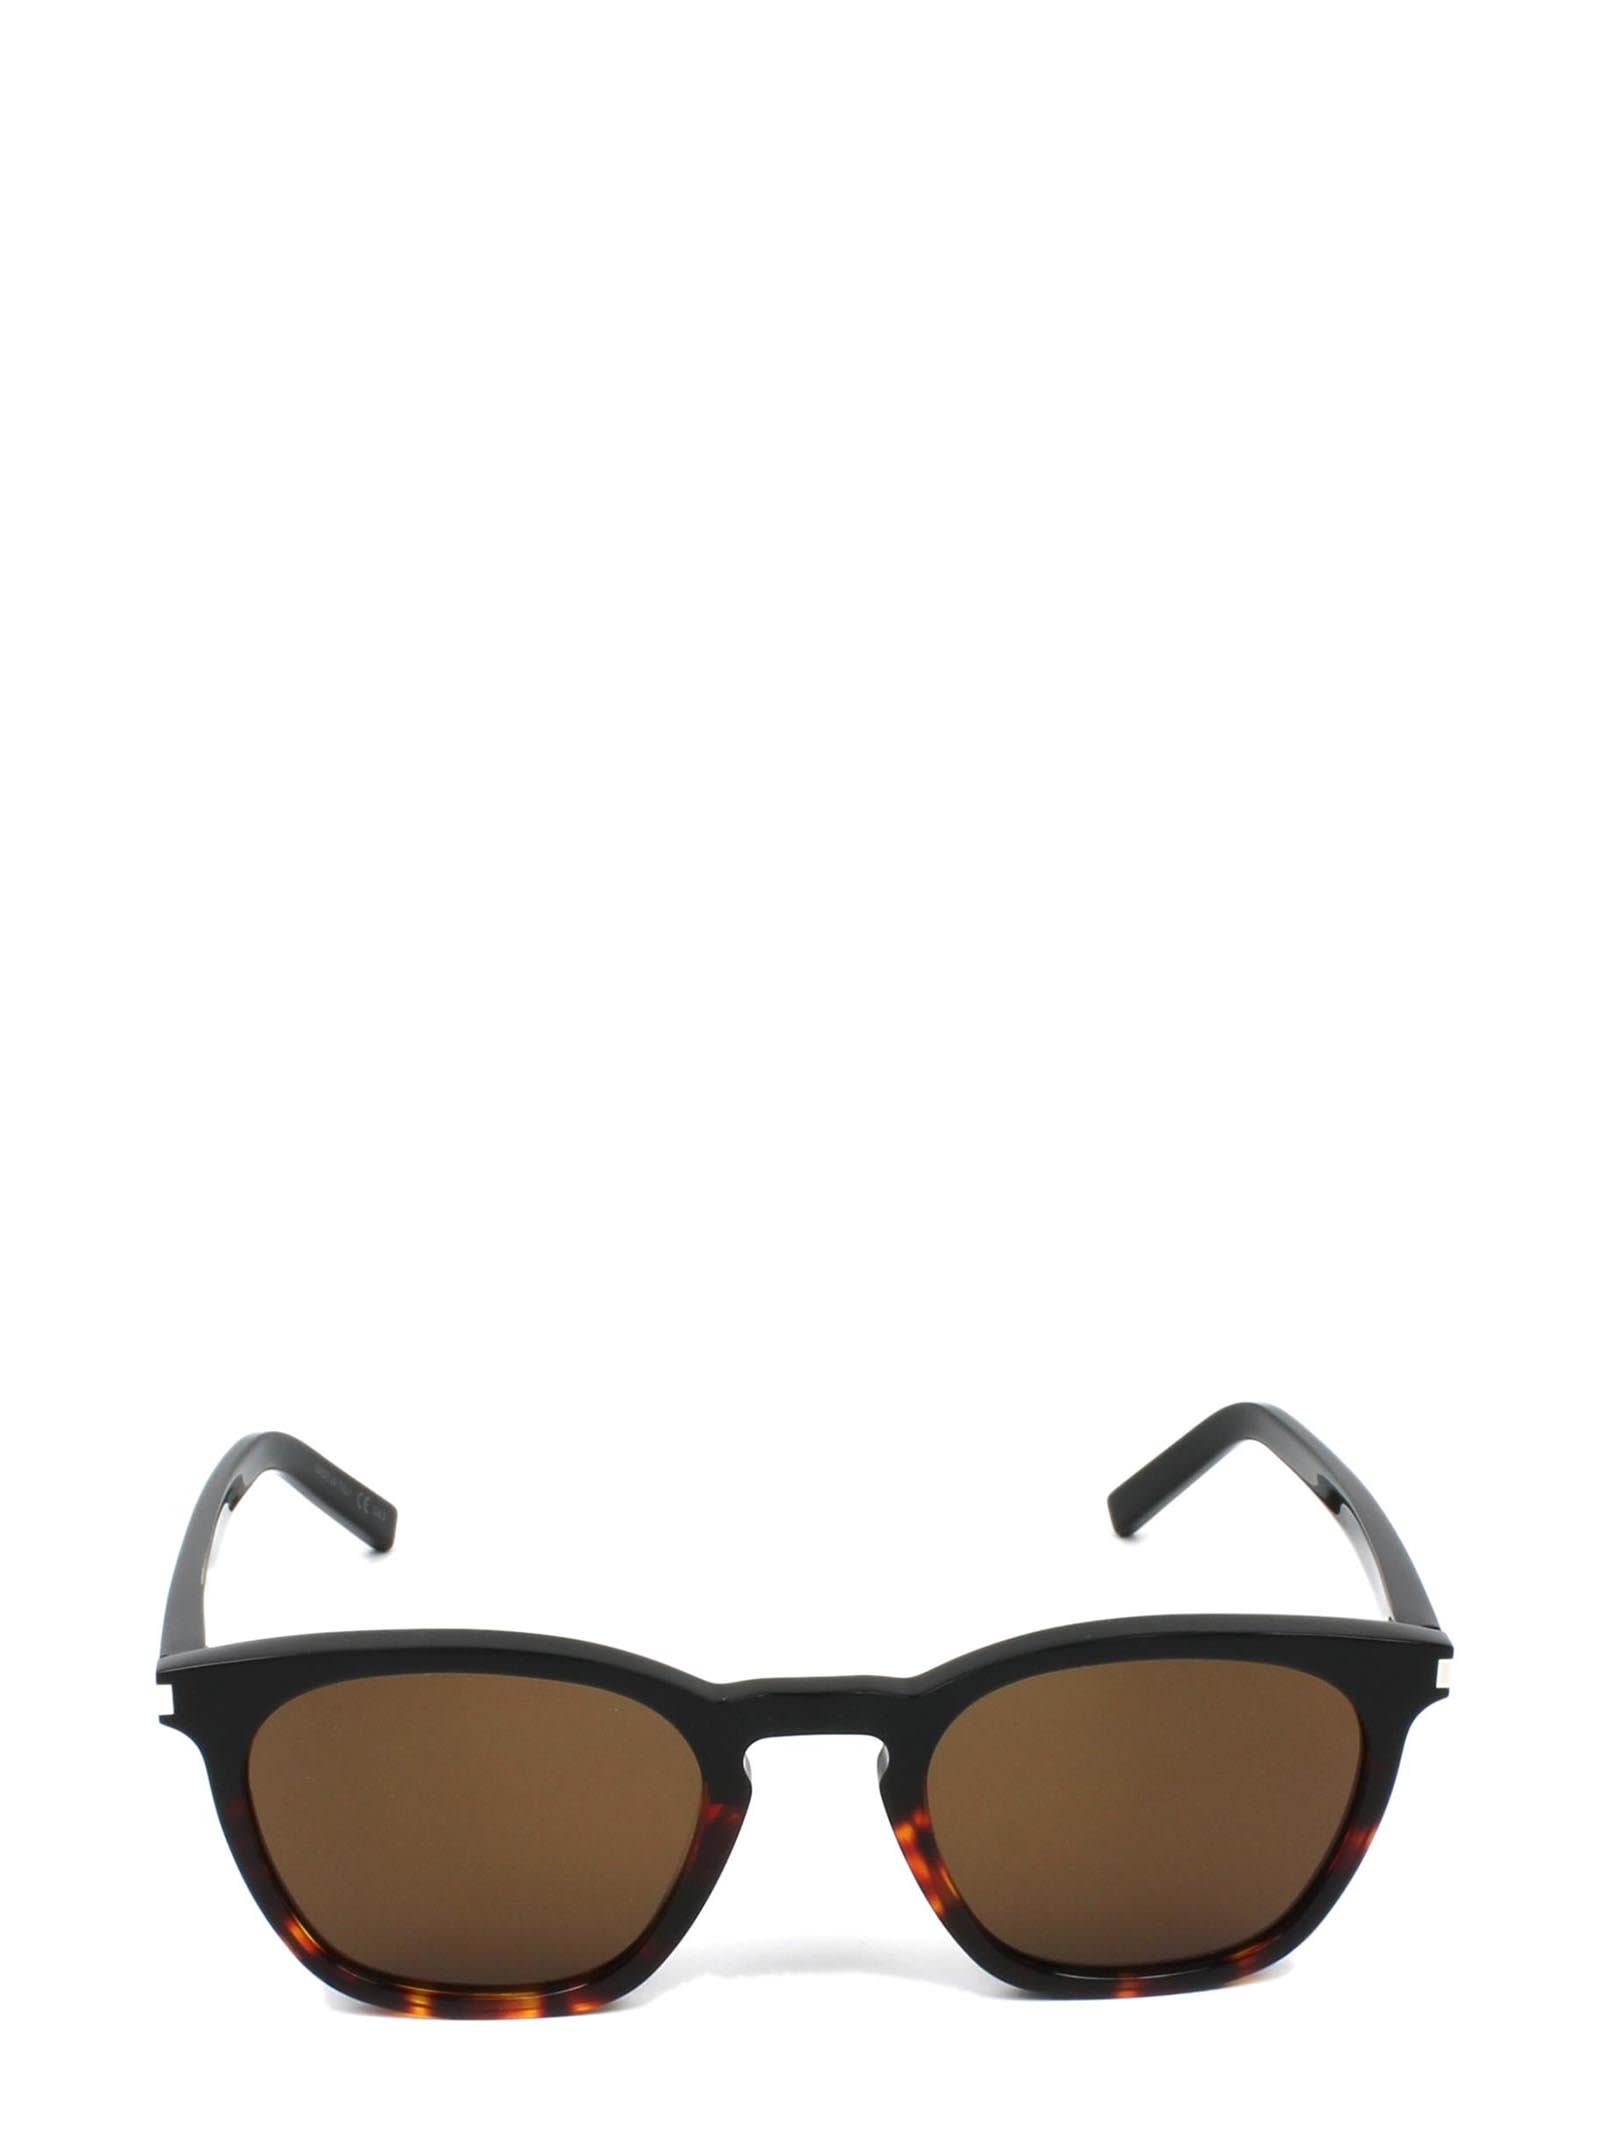 Saint Laurent Eyewear Saint Laurent Sl 28 Black & Havana Sunglasses